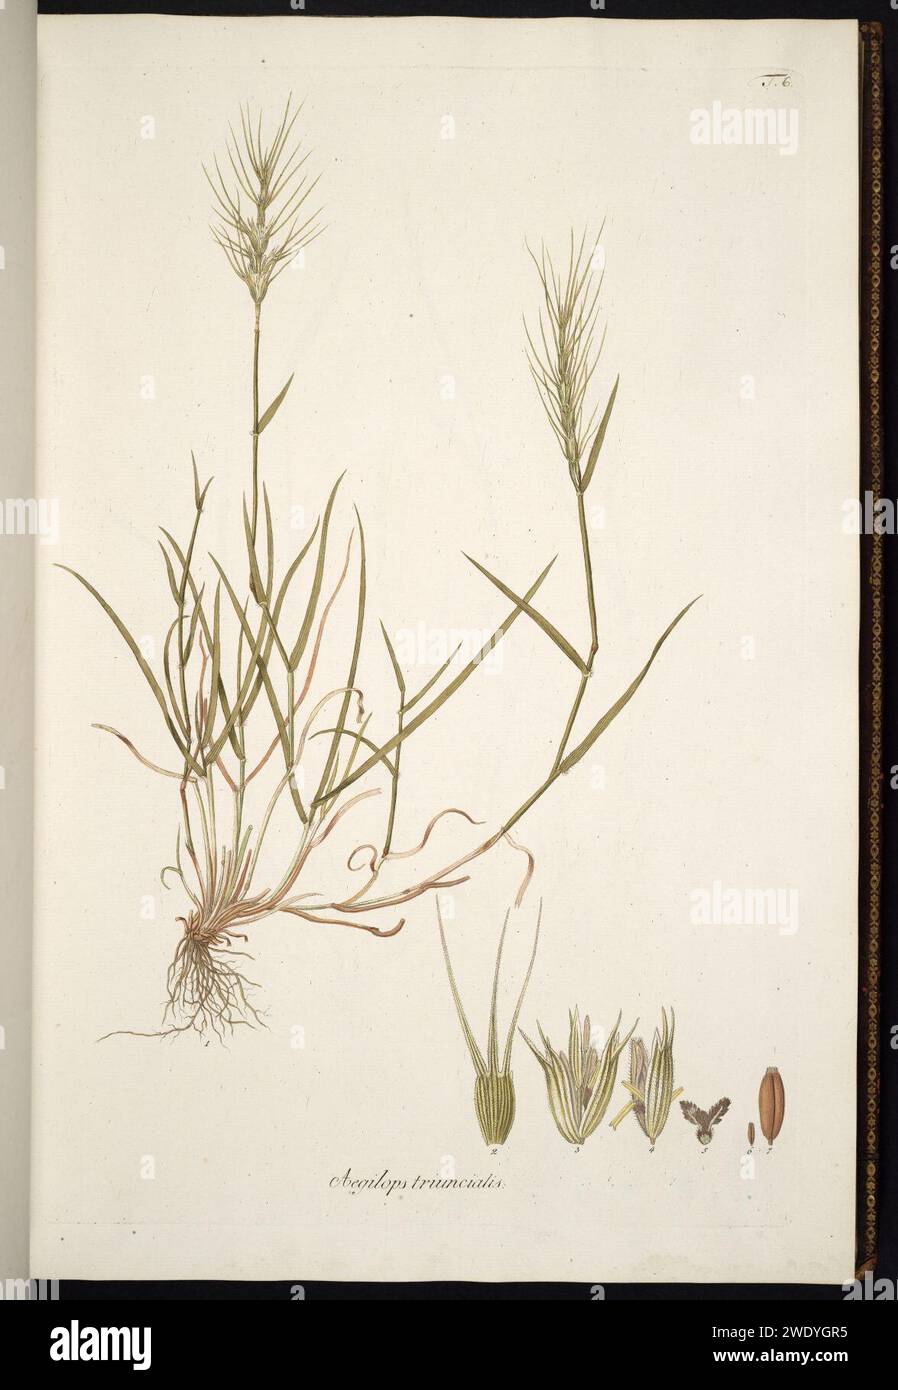 Aegilops triuncialis illustratie (01). Stock Photo